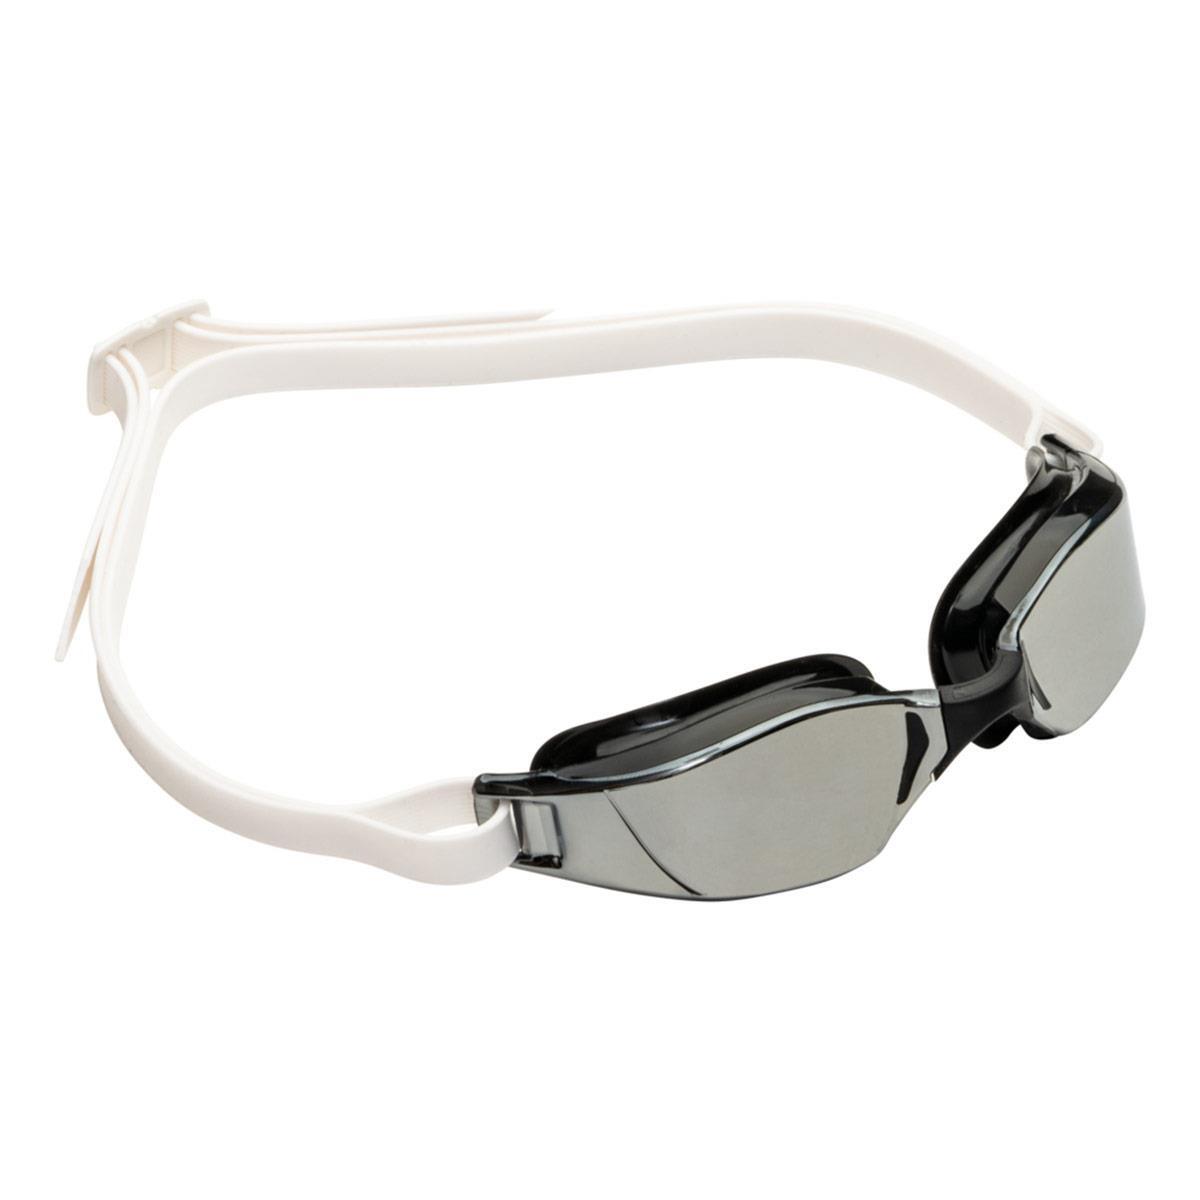 Aqua Sphere Xceed Swimming Goggles - Titanium Mirrored lens 3/5